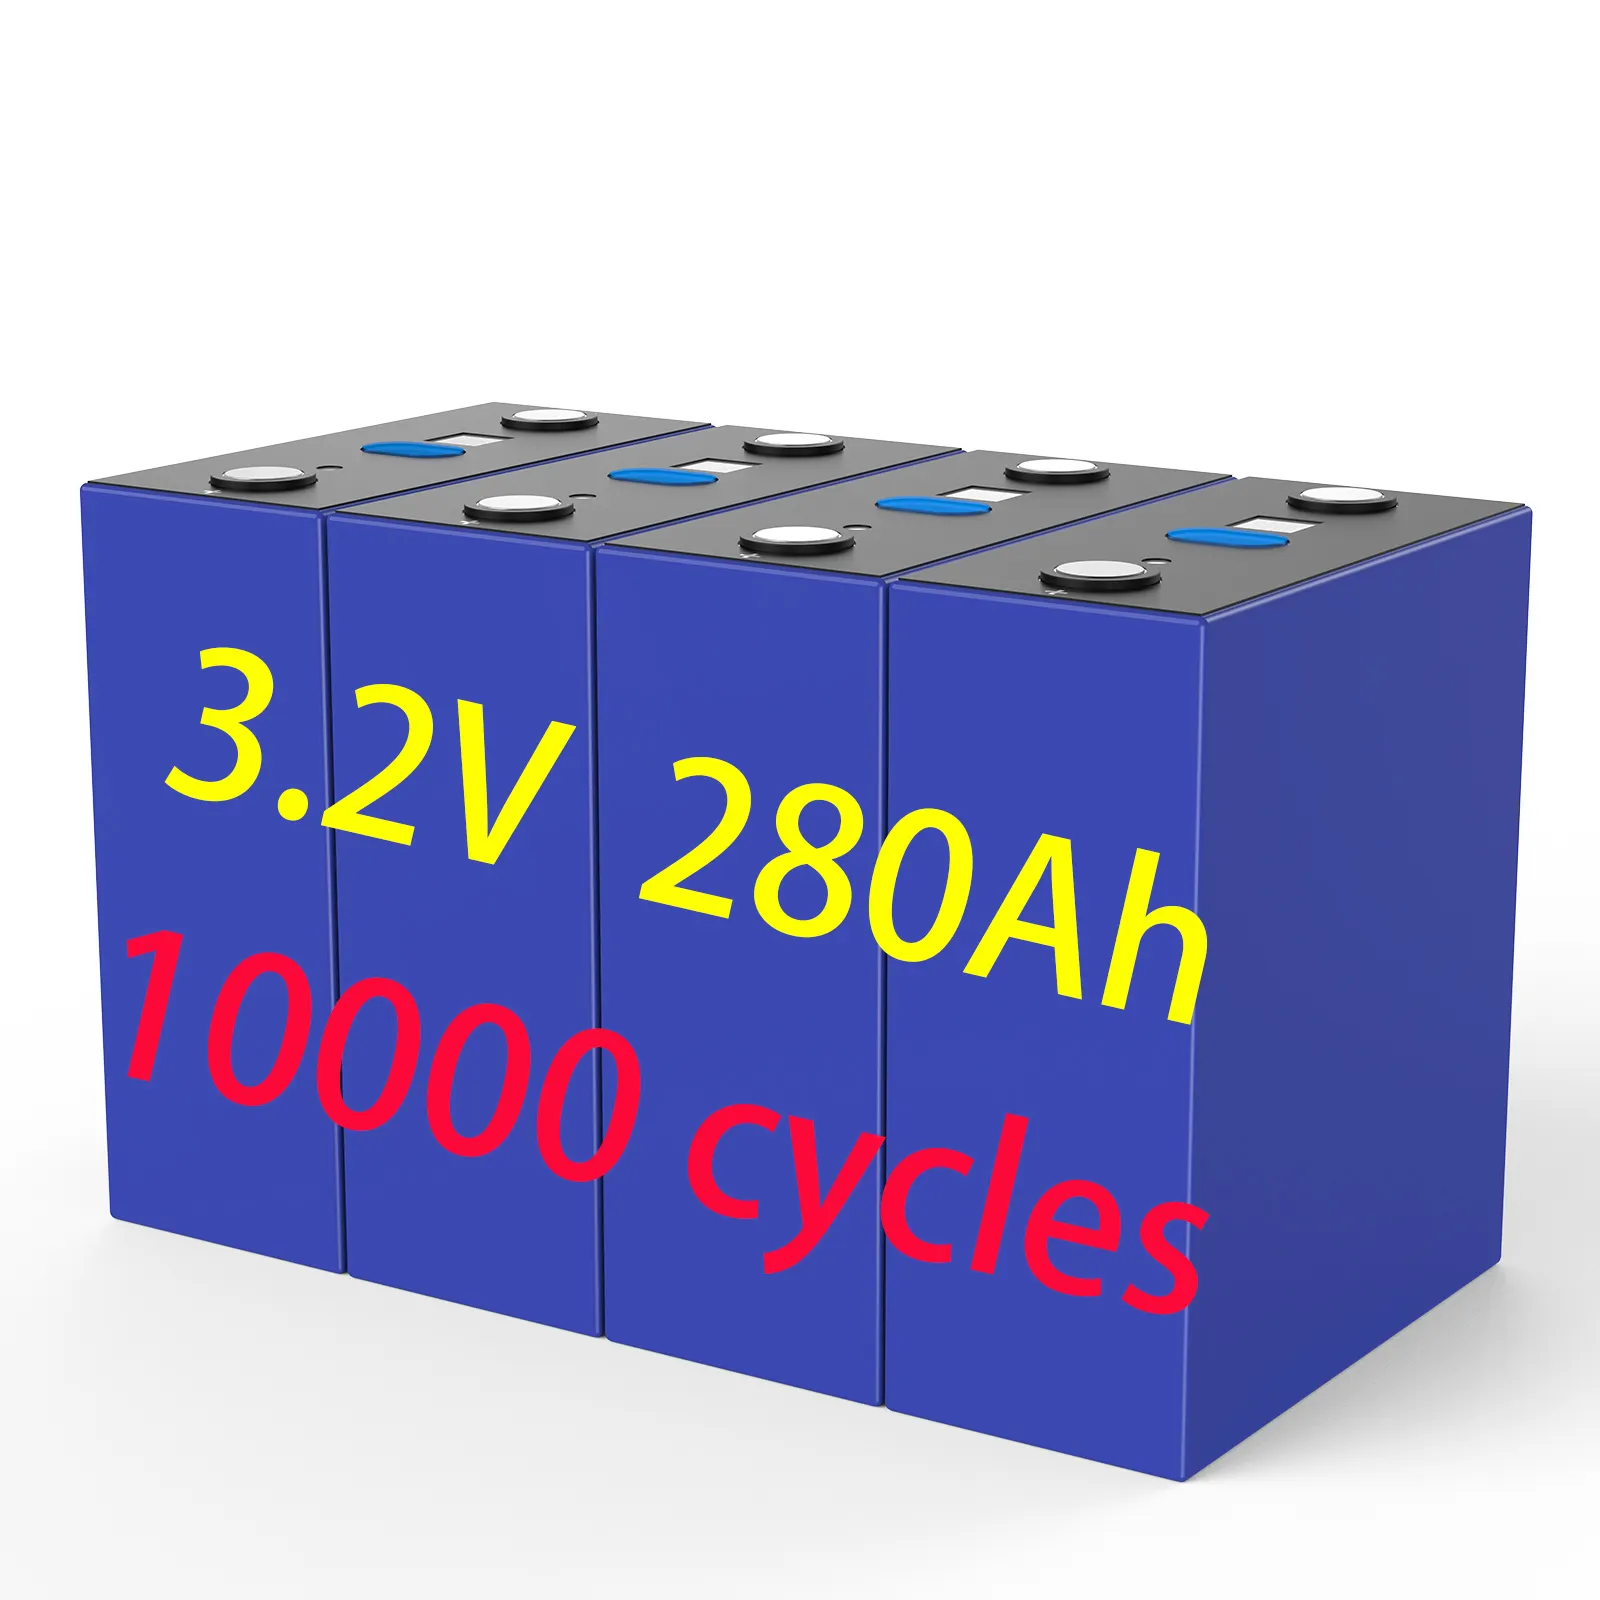 10000 çevrim ömrü 280Ah LiFePO4 pil 3.2V şarj edilebilir prizmatik depolama aküsü güneş lityum iyon piller